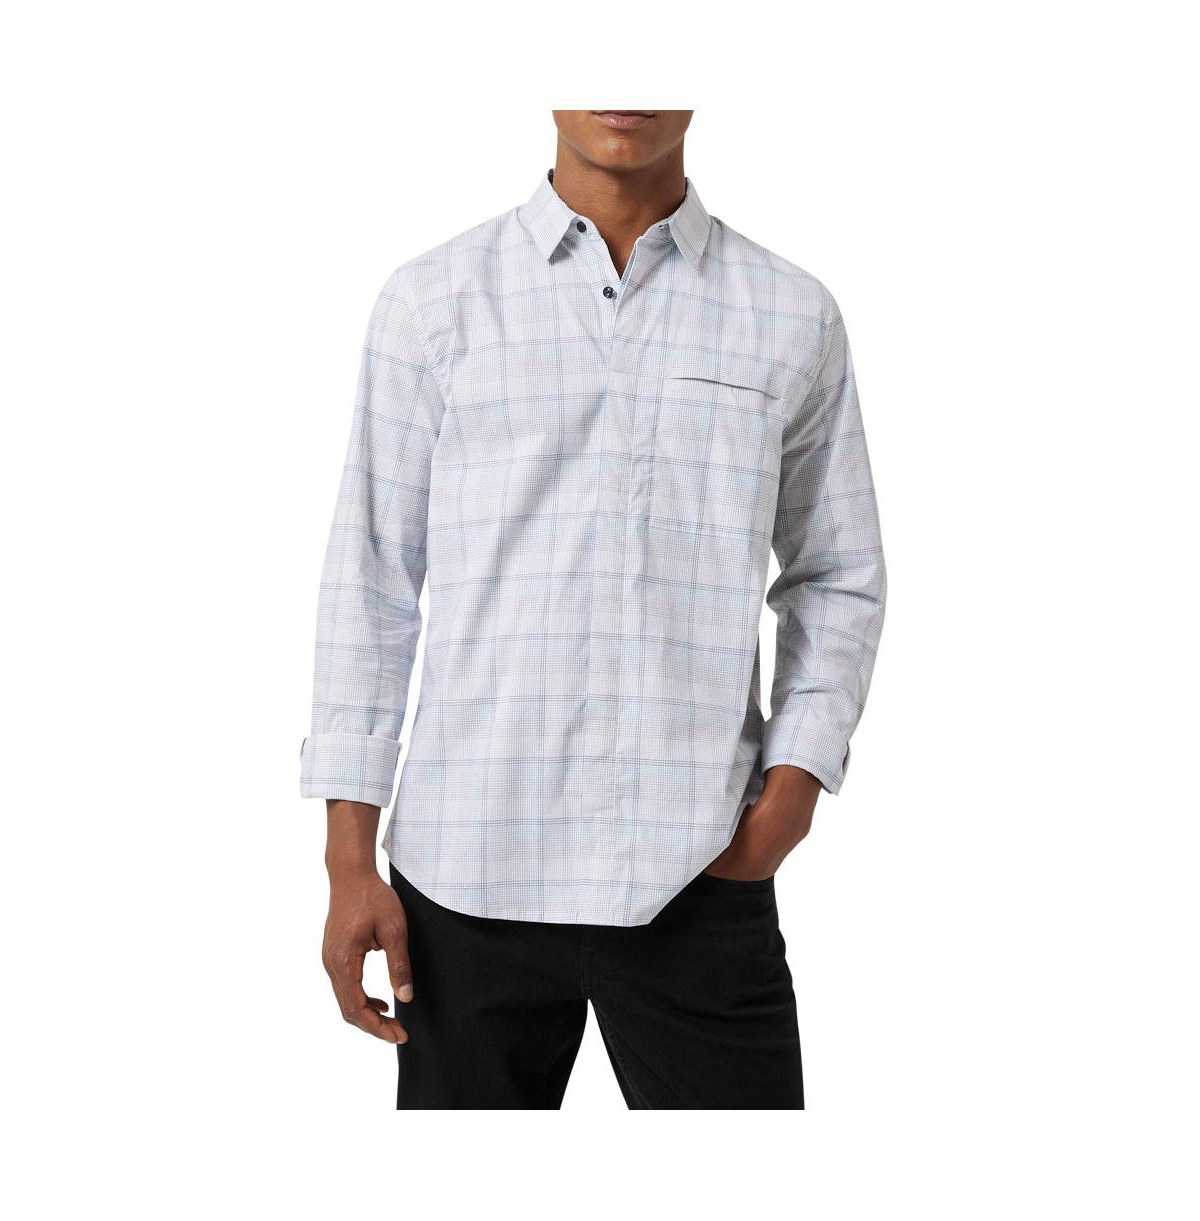 Men's Andrew Stretch Long Sleeve Shirt - White